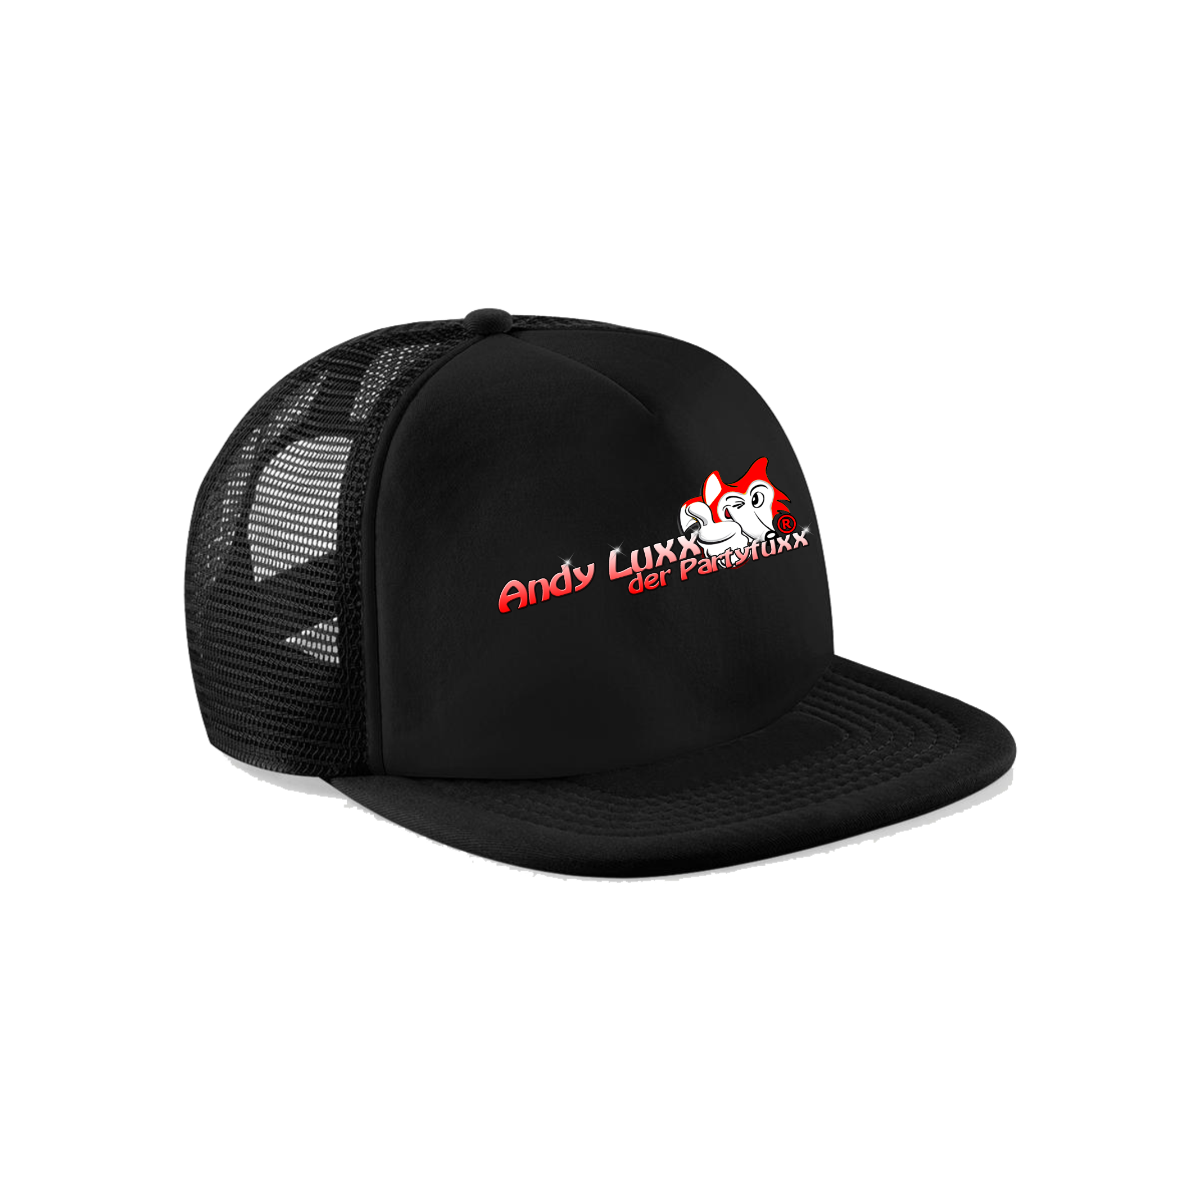 Cap "ANDY LUXX DER PARTYFUXX Logo" rot, schwarz